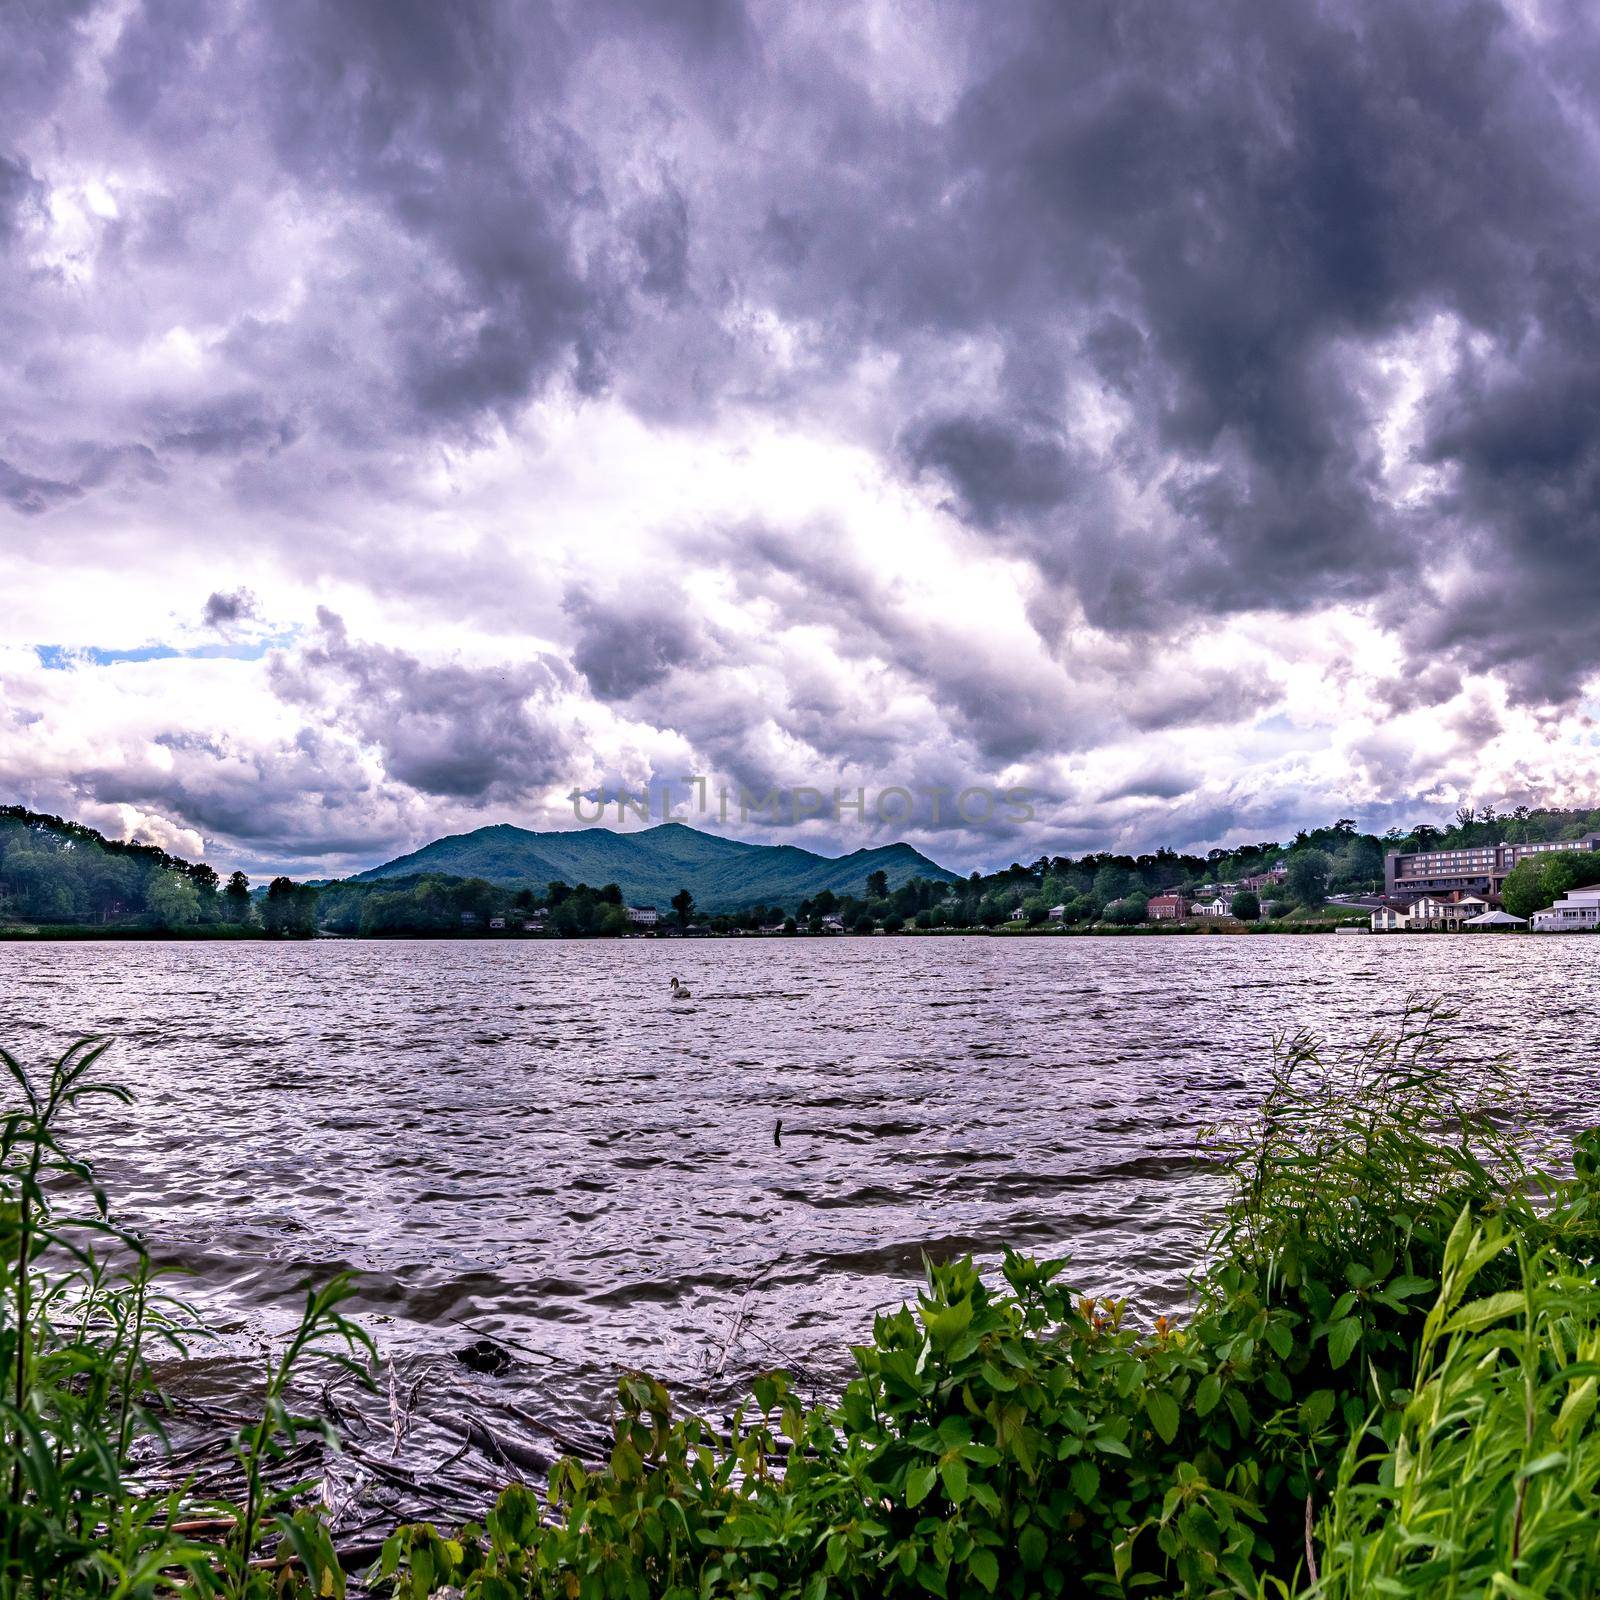 dramatic sky and nature at lake junaluska north carolina near maggie valley by digidreamgrafix